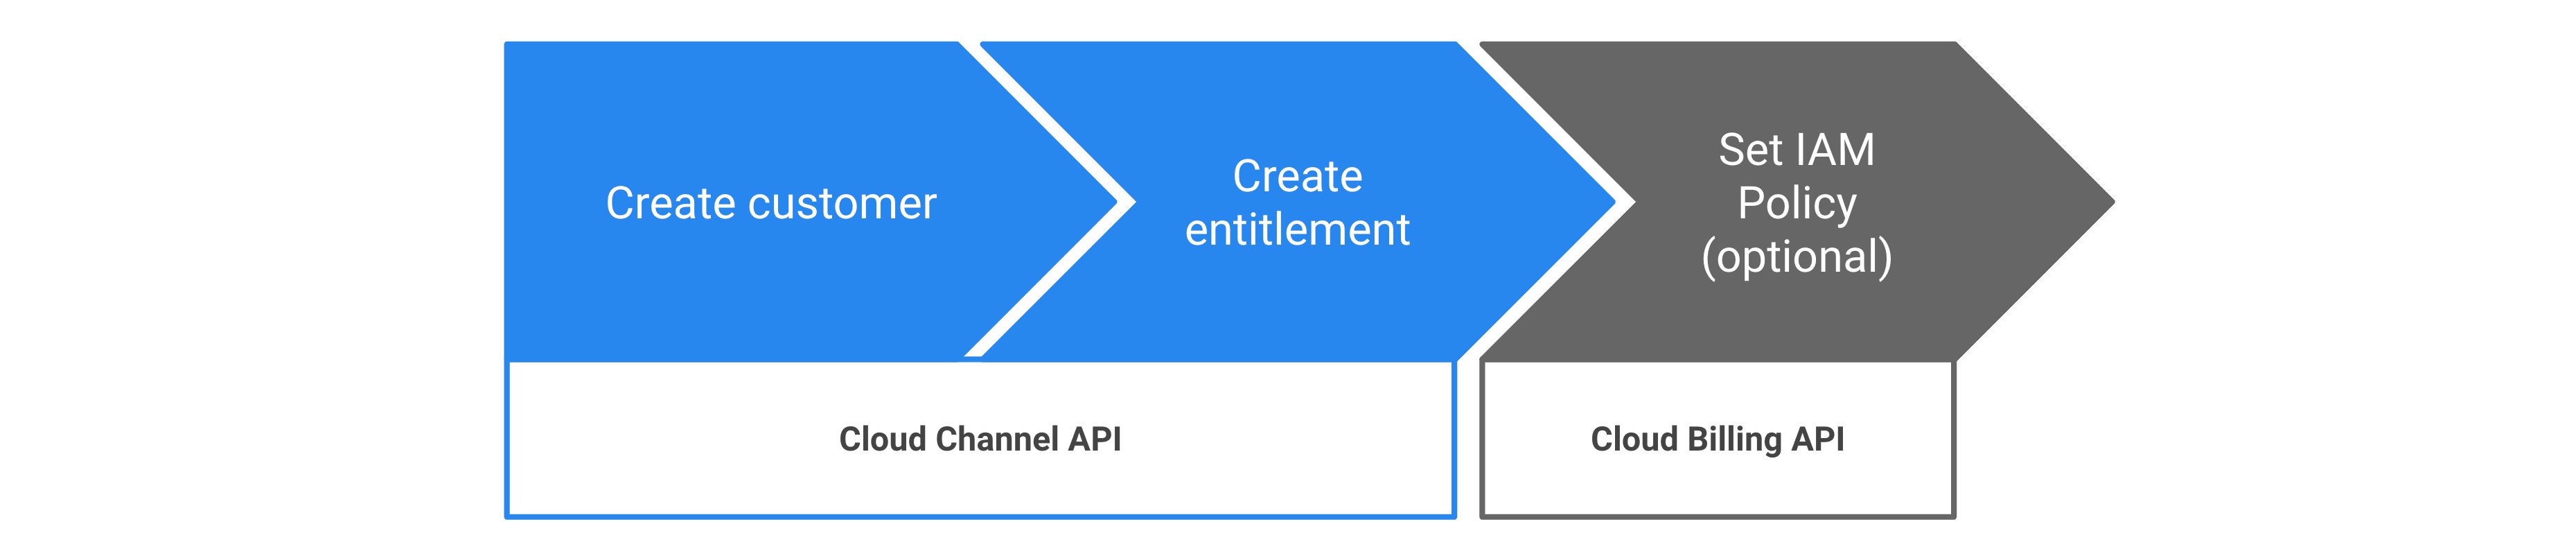 通过 Cloud Channel API 配置 Google Cloud 使用权的步骤